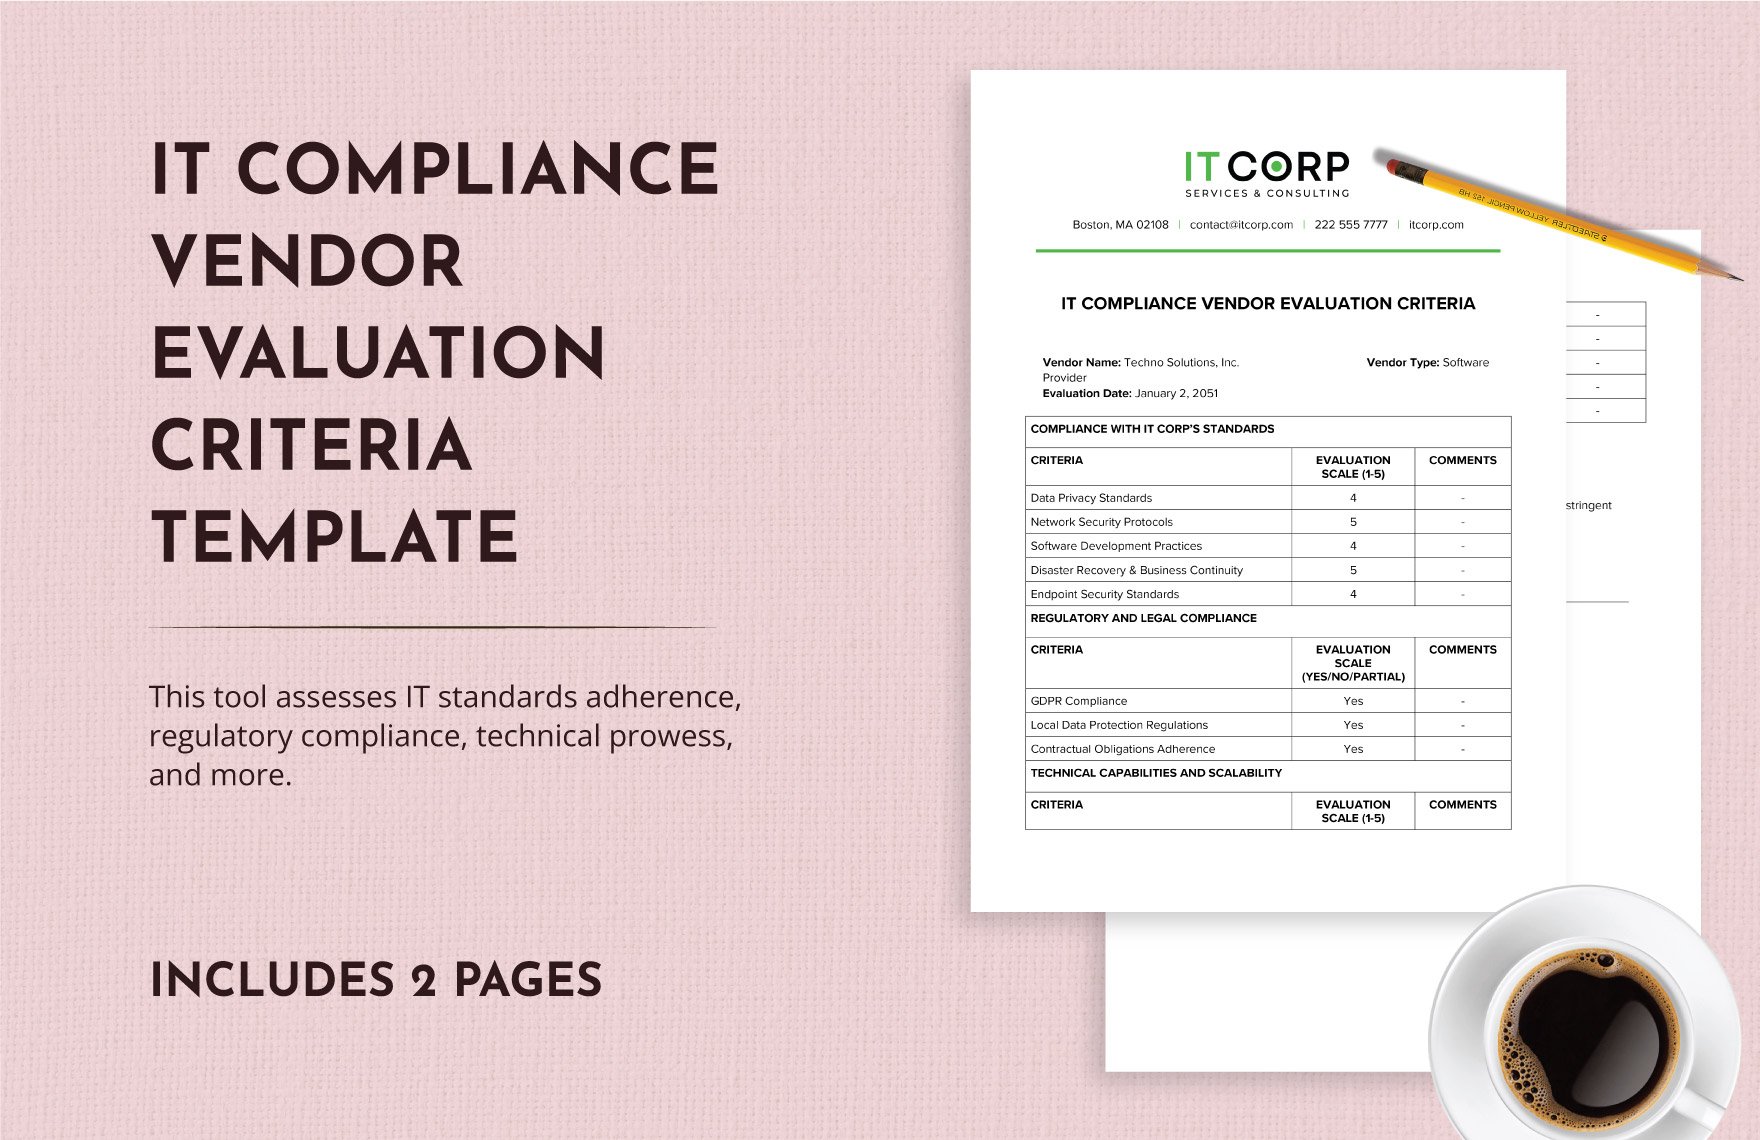 IT Compliance Vendor Evaluation Criteria Template